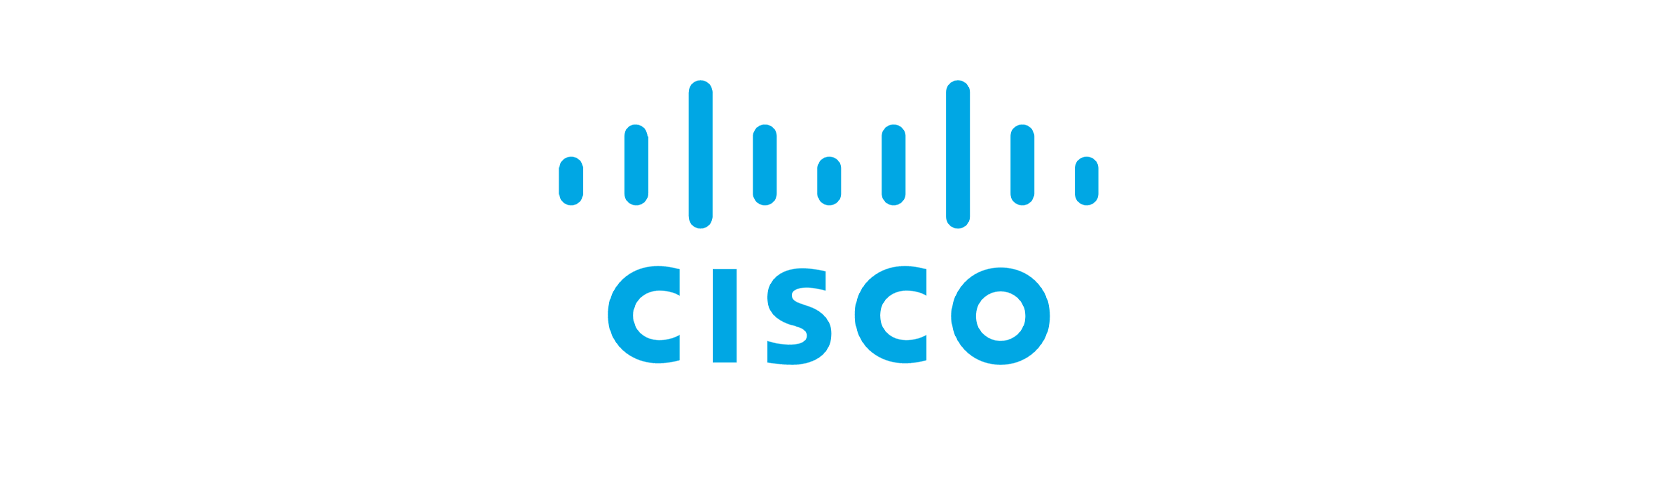 network_cisco